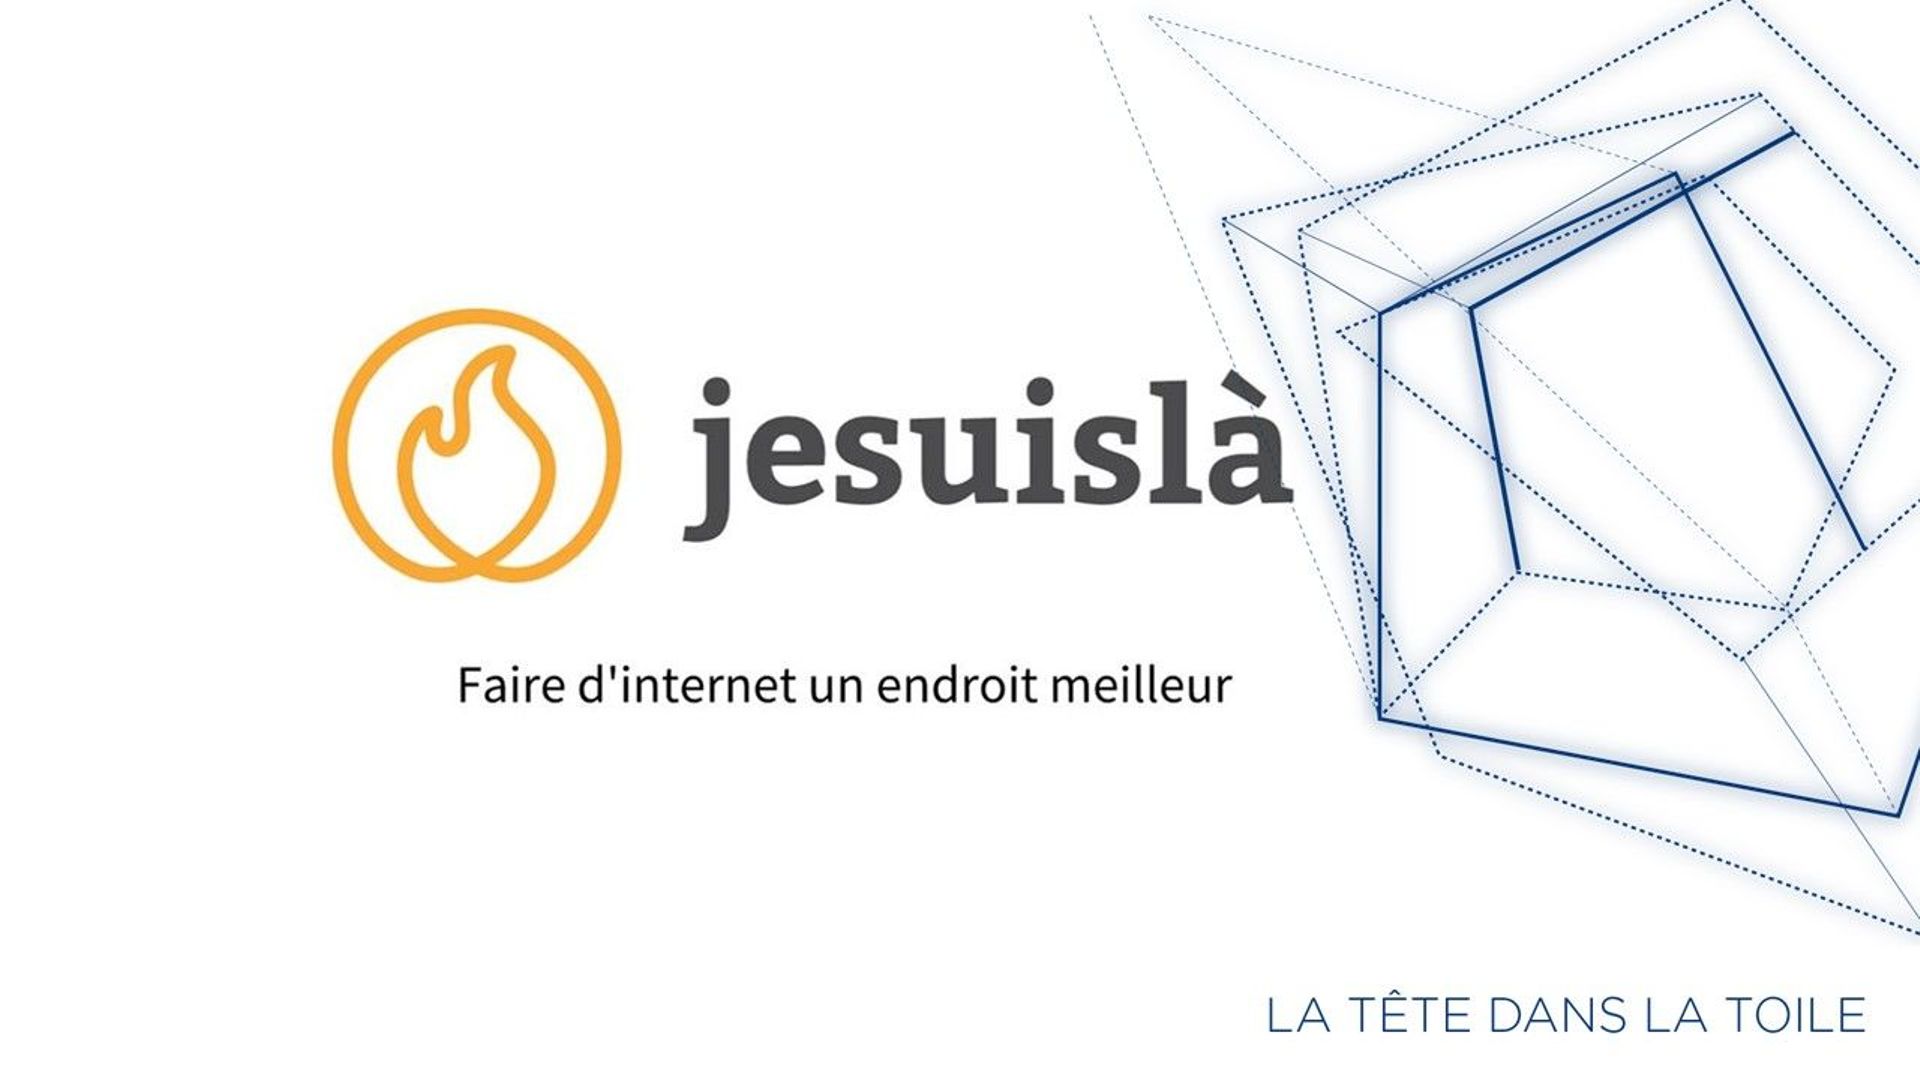 #Jesuislà: Les internautes s'organisent pour un web plus positif